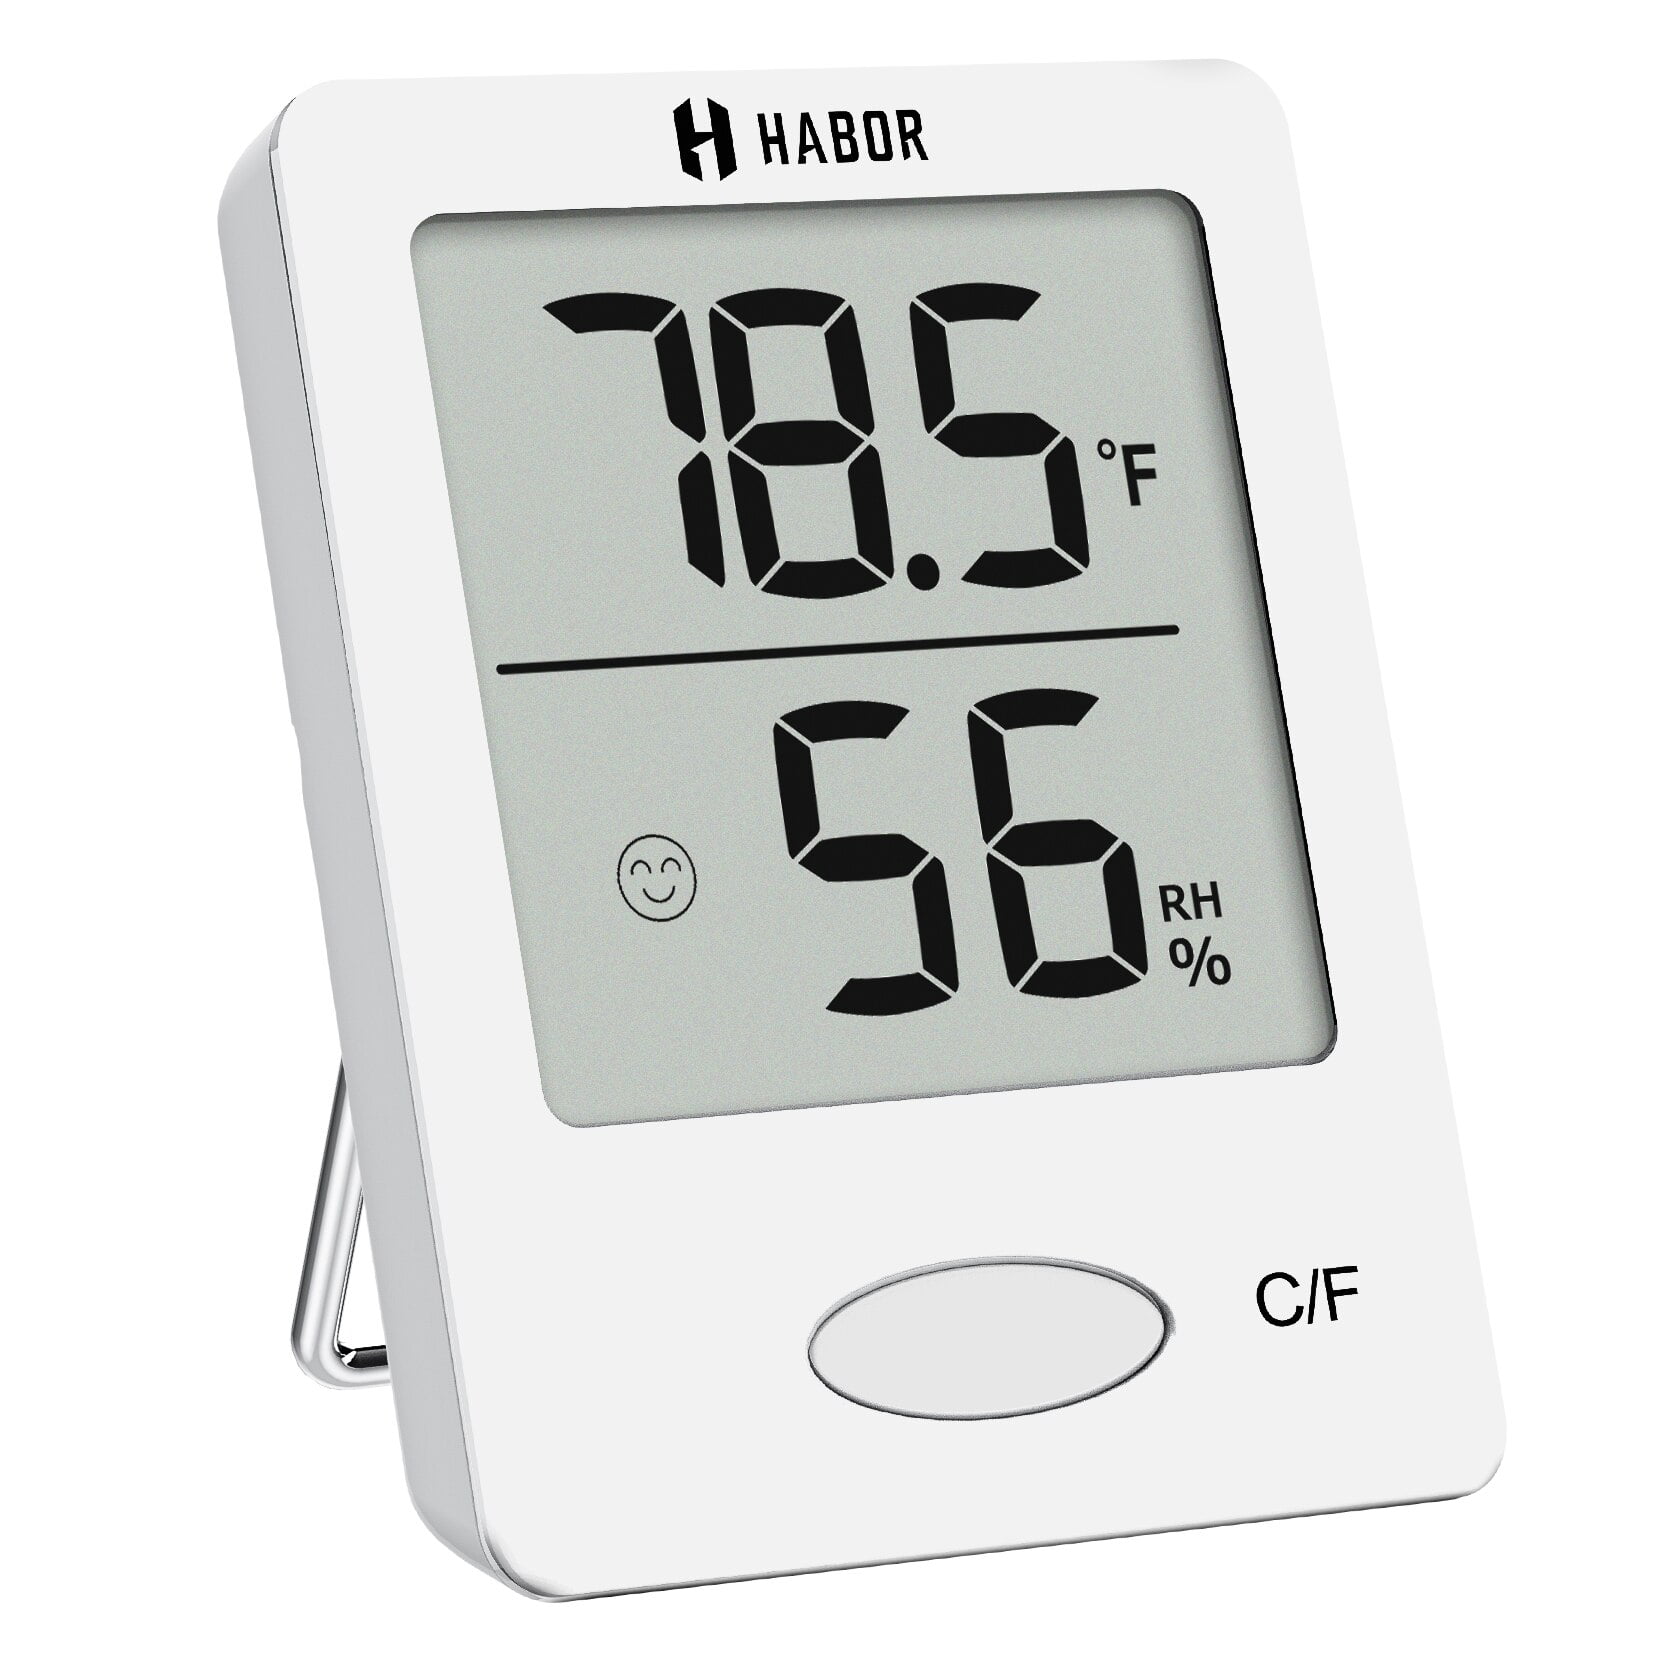 4 Pcs Mini Hygrometer Thermometer, Indoor Thermometer LCD Digital  Hygrometer Room Thermometer and Humidity Monitor Meter Gauge Temperature °C  /°F